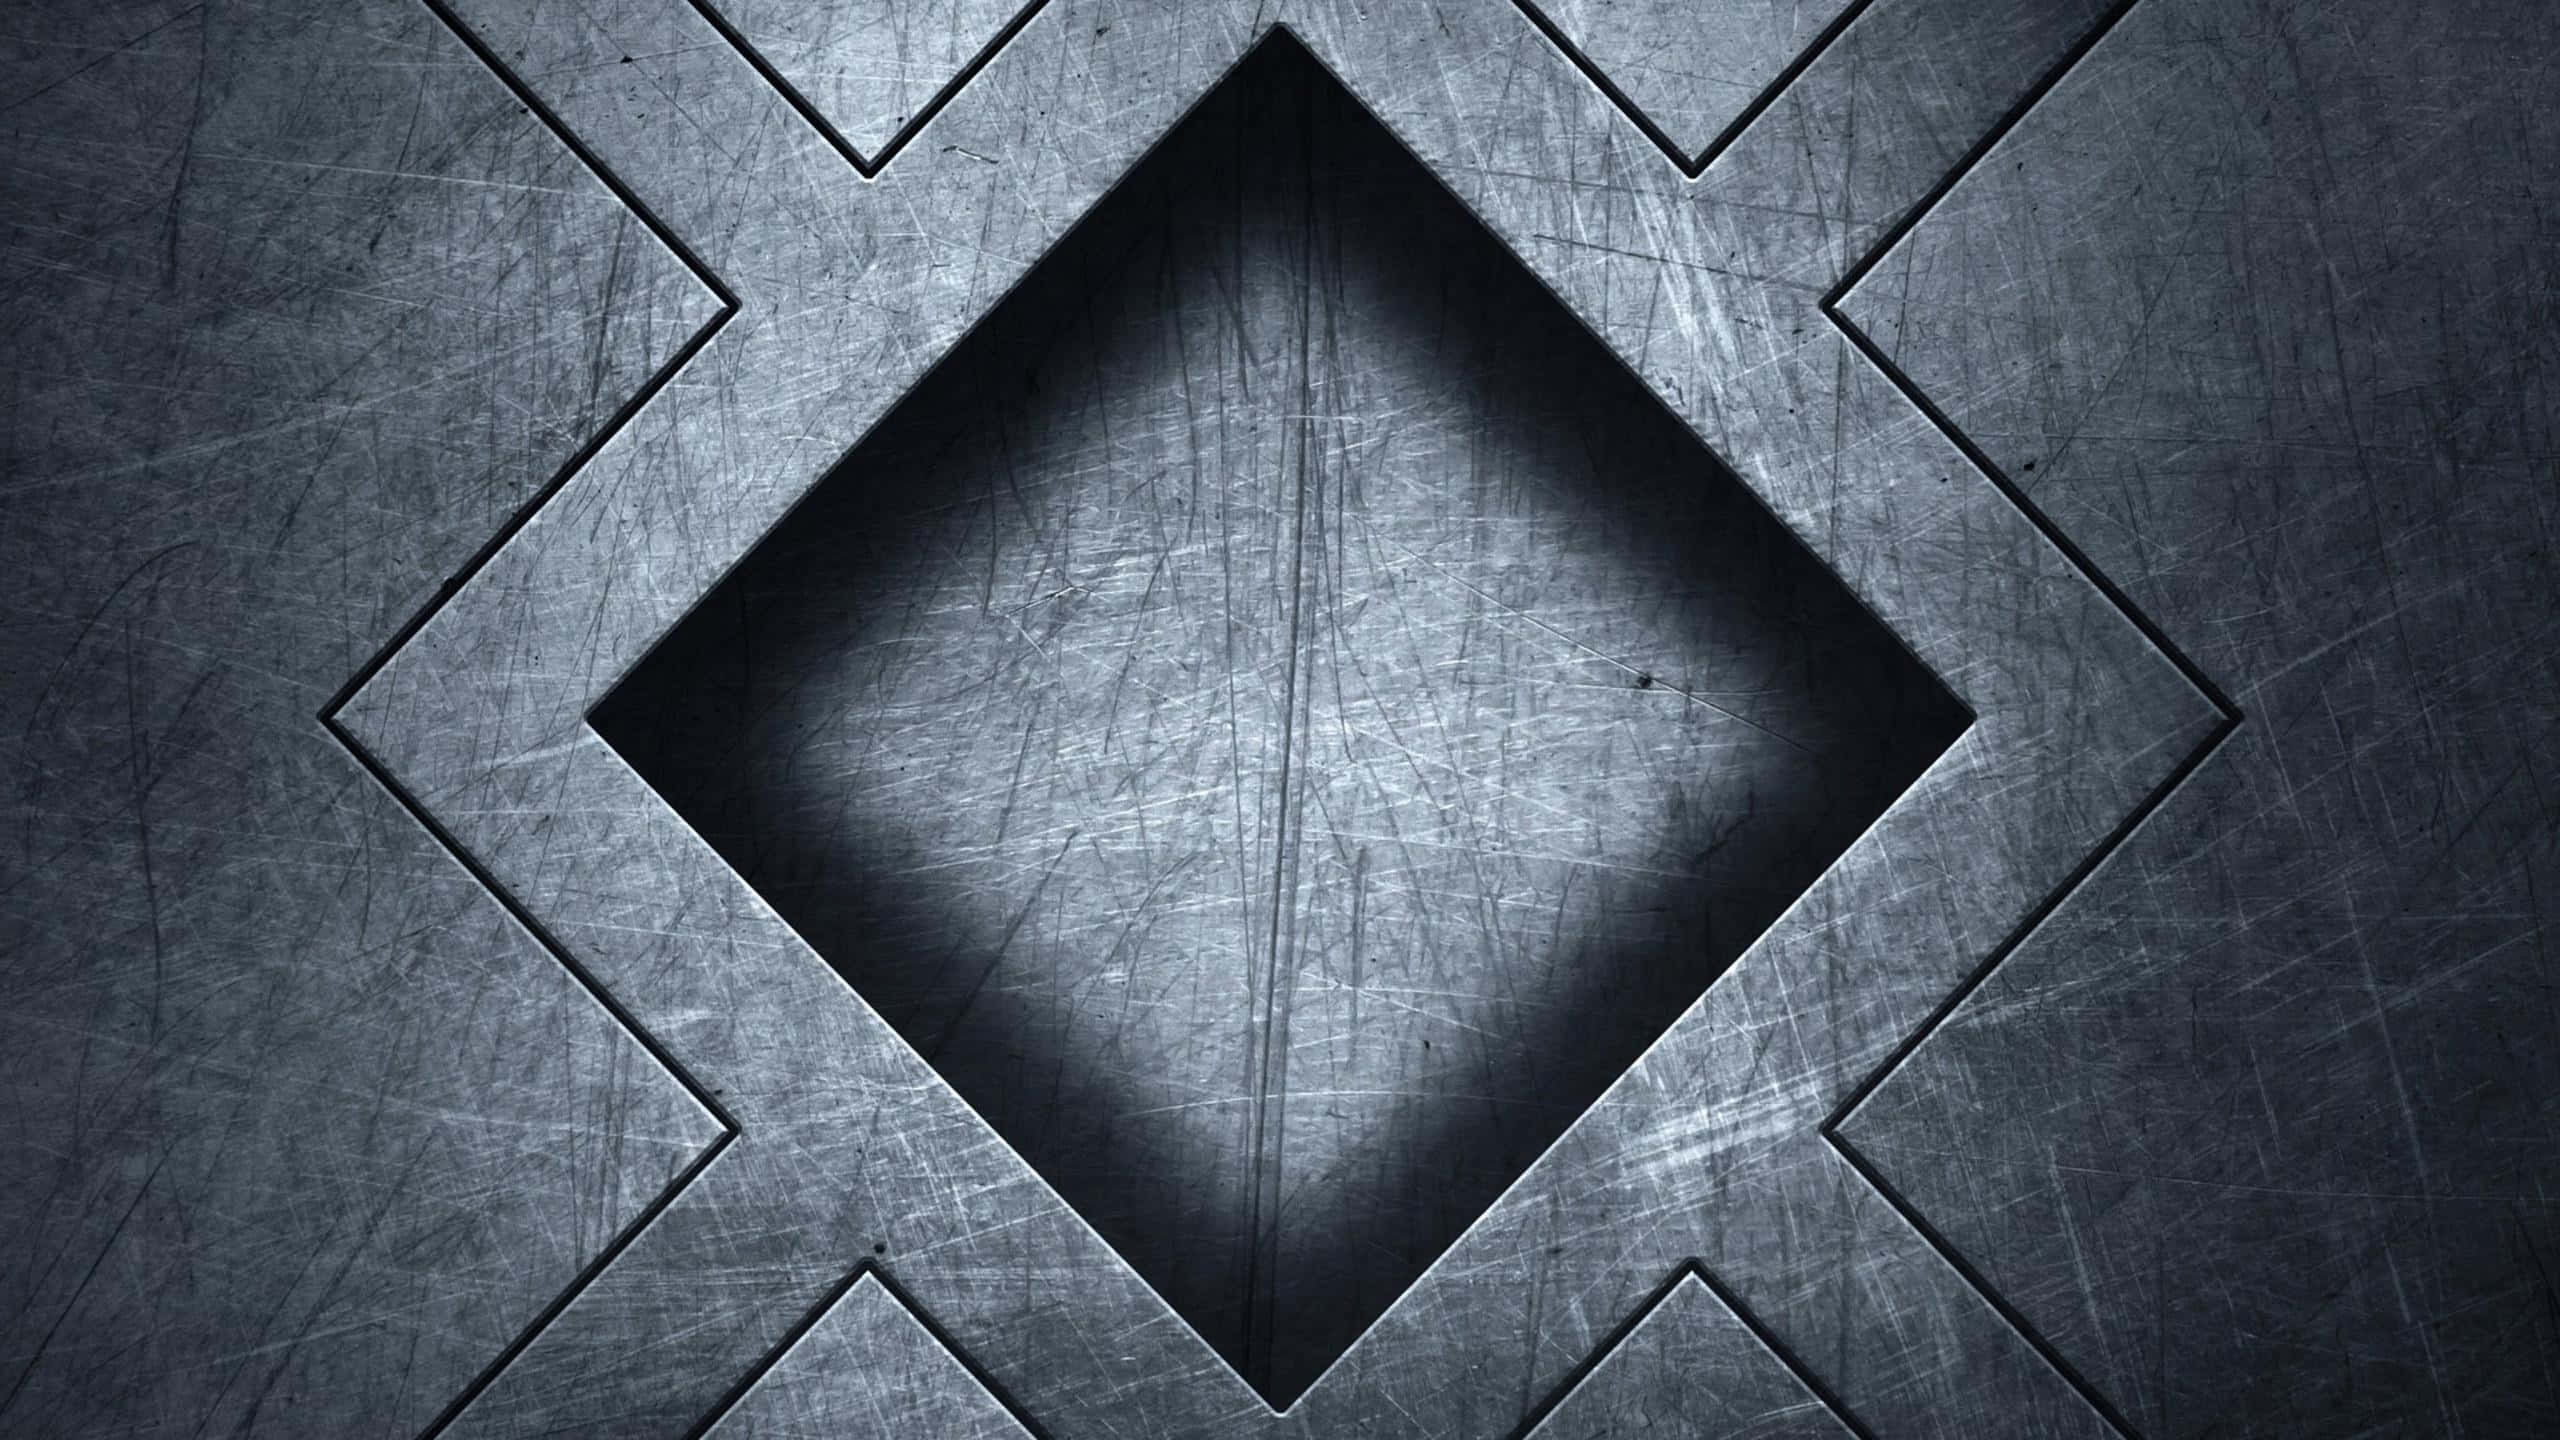 Immaginigeometriche Quadrate Di Texture In Metallo Sulla Lastra Di Acciaio.